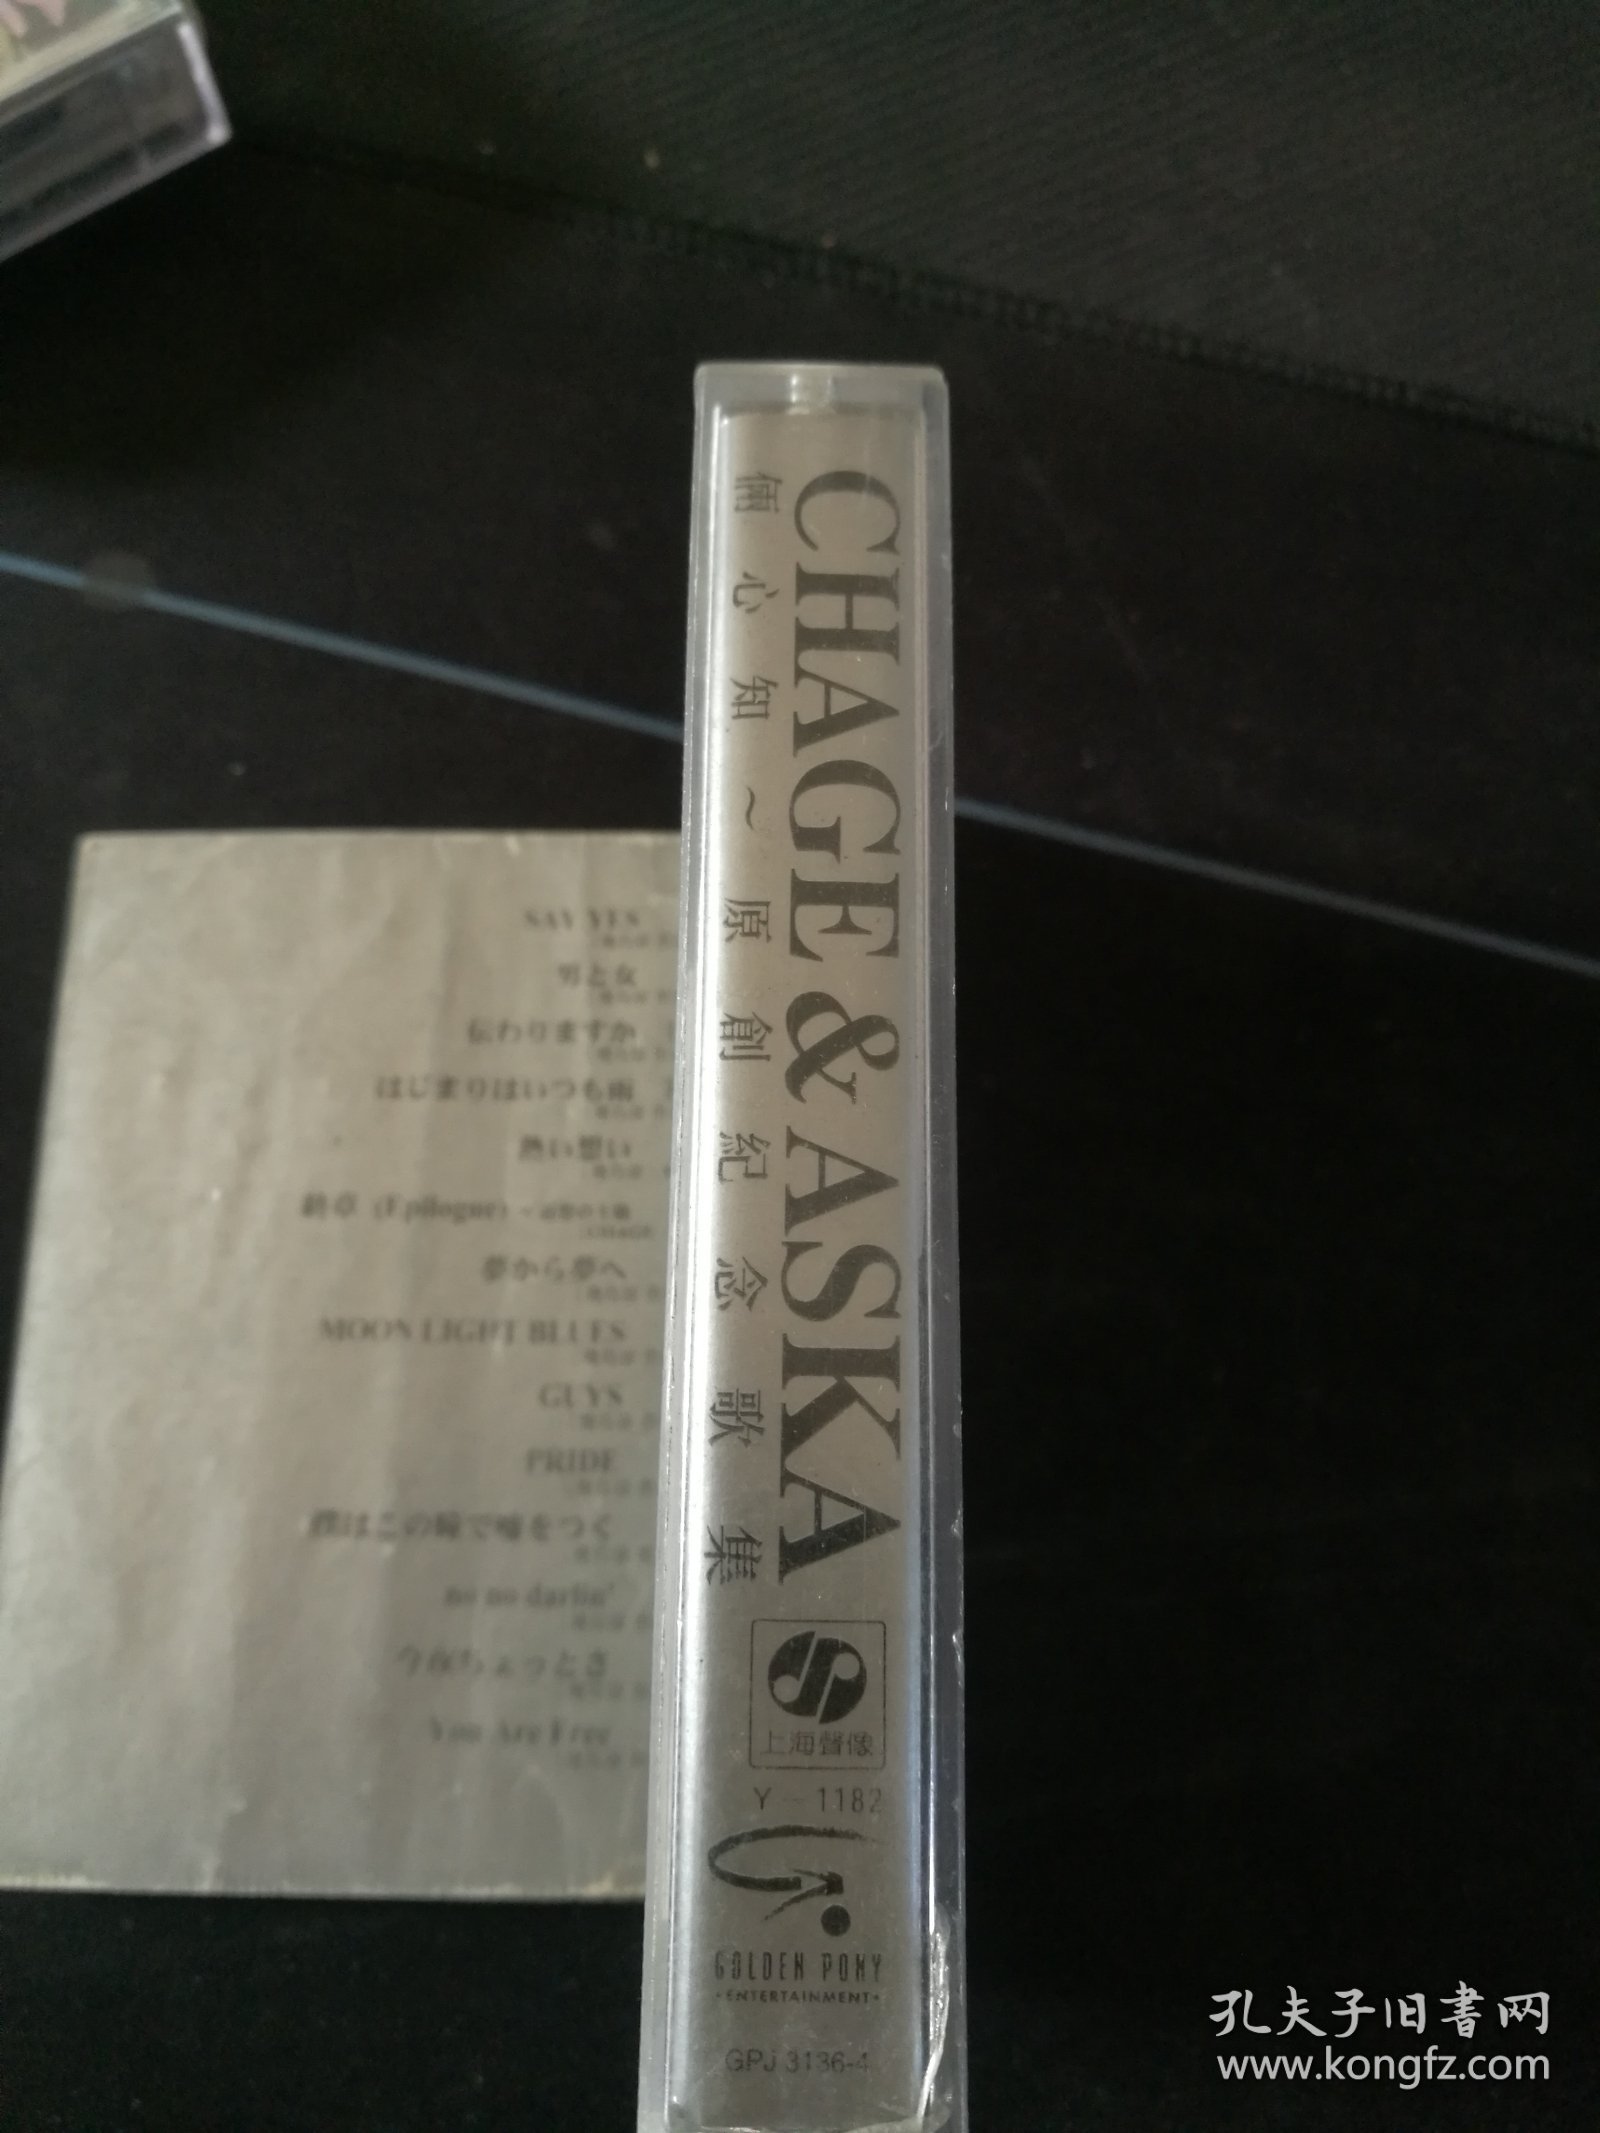 《俩心知 原创纪念歌集》首版灰卡老磁带，嘉音供版，上海声像出版社出版